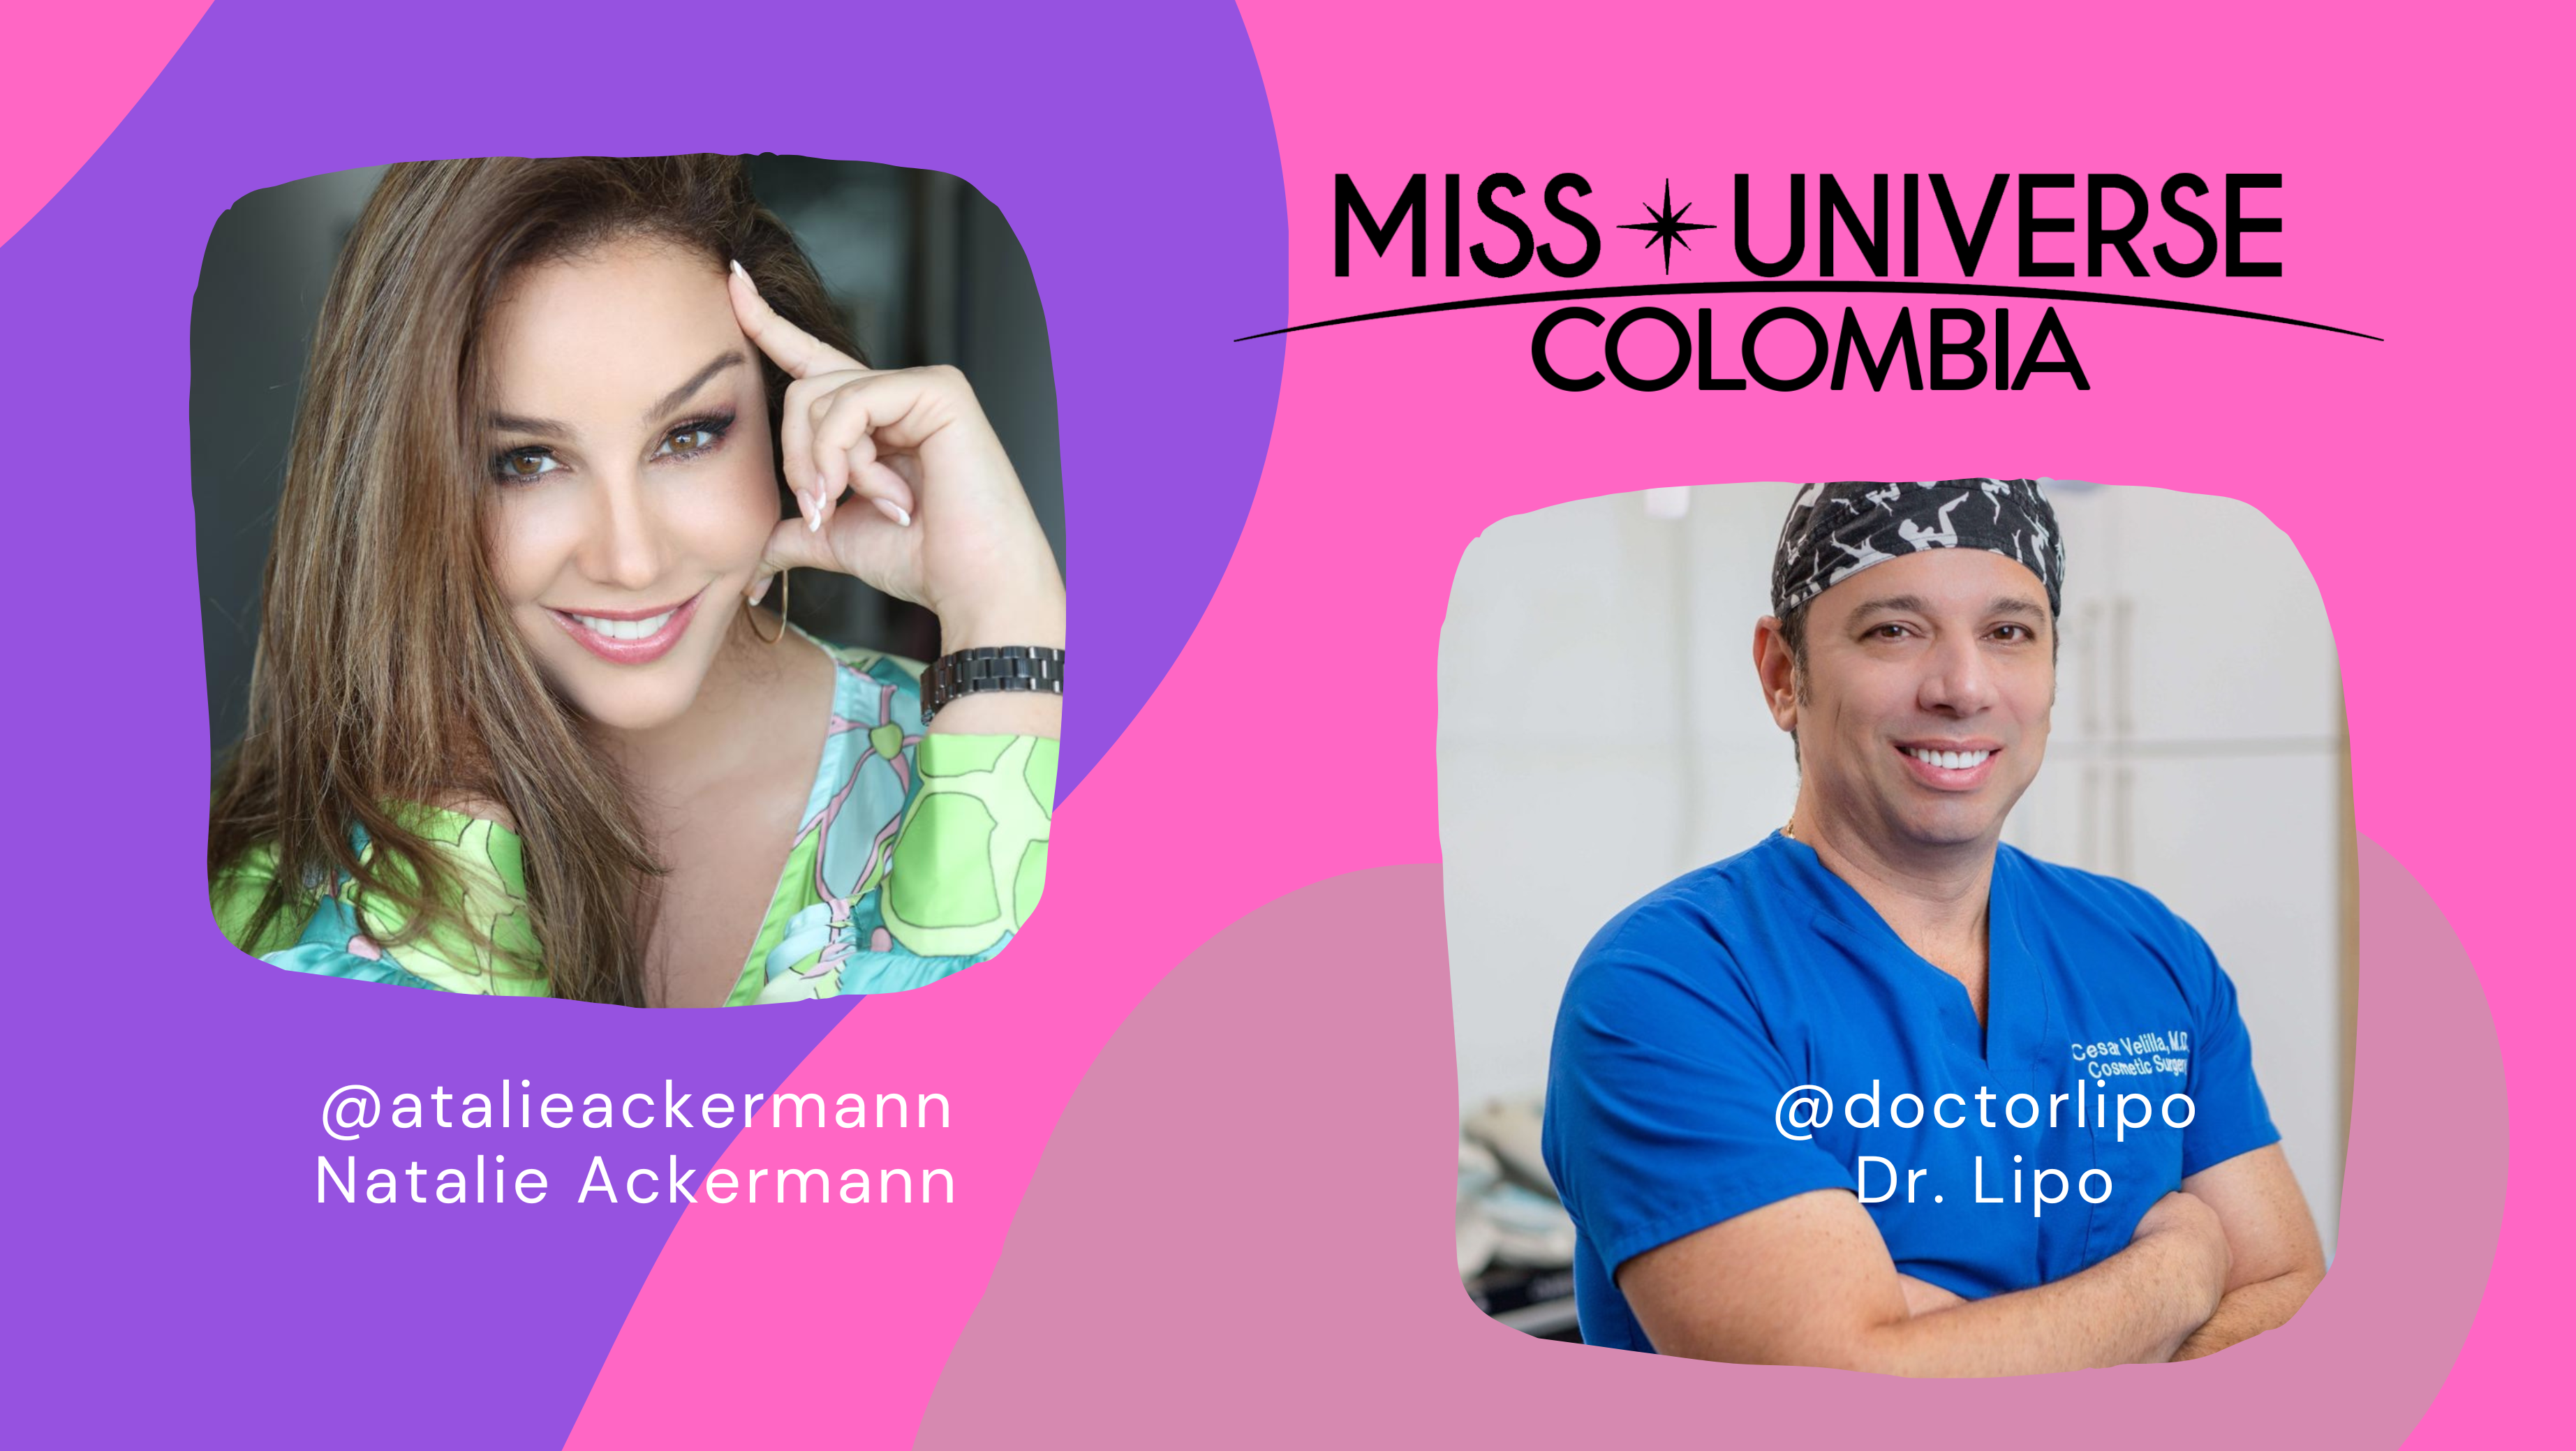 Se completa el cuadro de jueces en Miss Universe Colombia. Cesar Velilla, el famoso doctor Lipo evaluará la candidata más idónea para la competencia